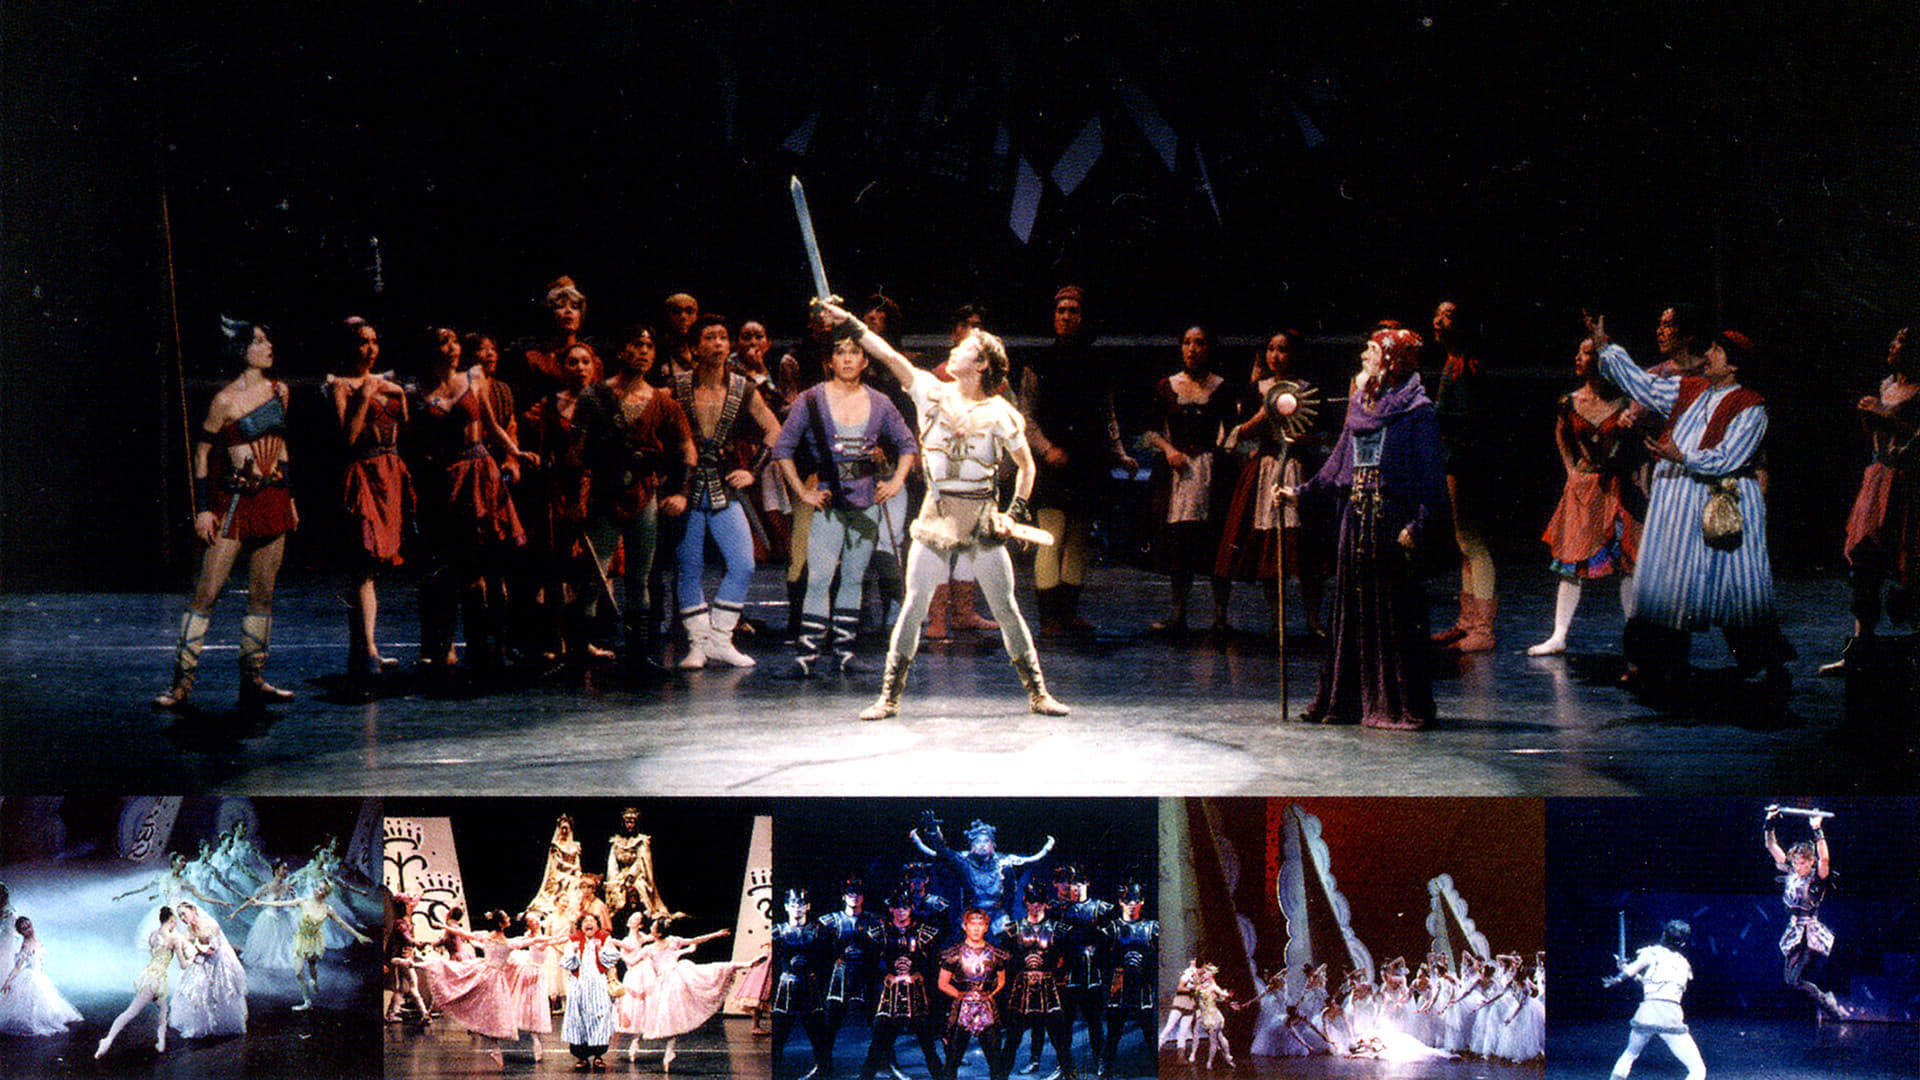 バレエ「ドラゴンクエスト」スターダンサーズ･バレエ団 (2002)